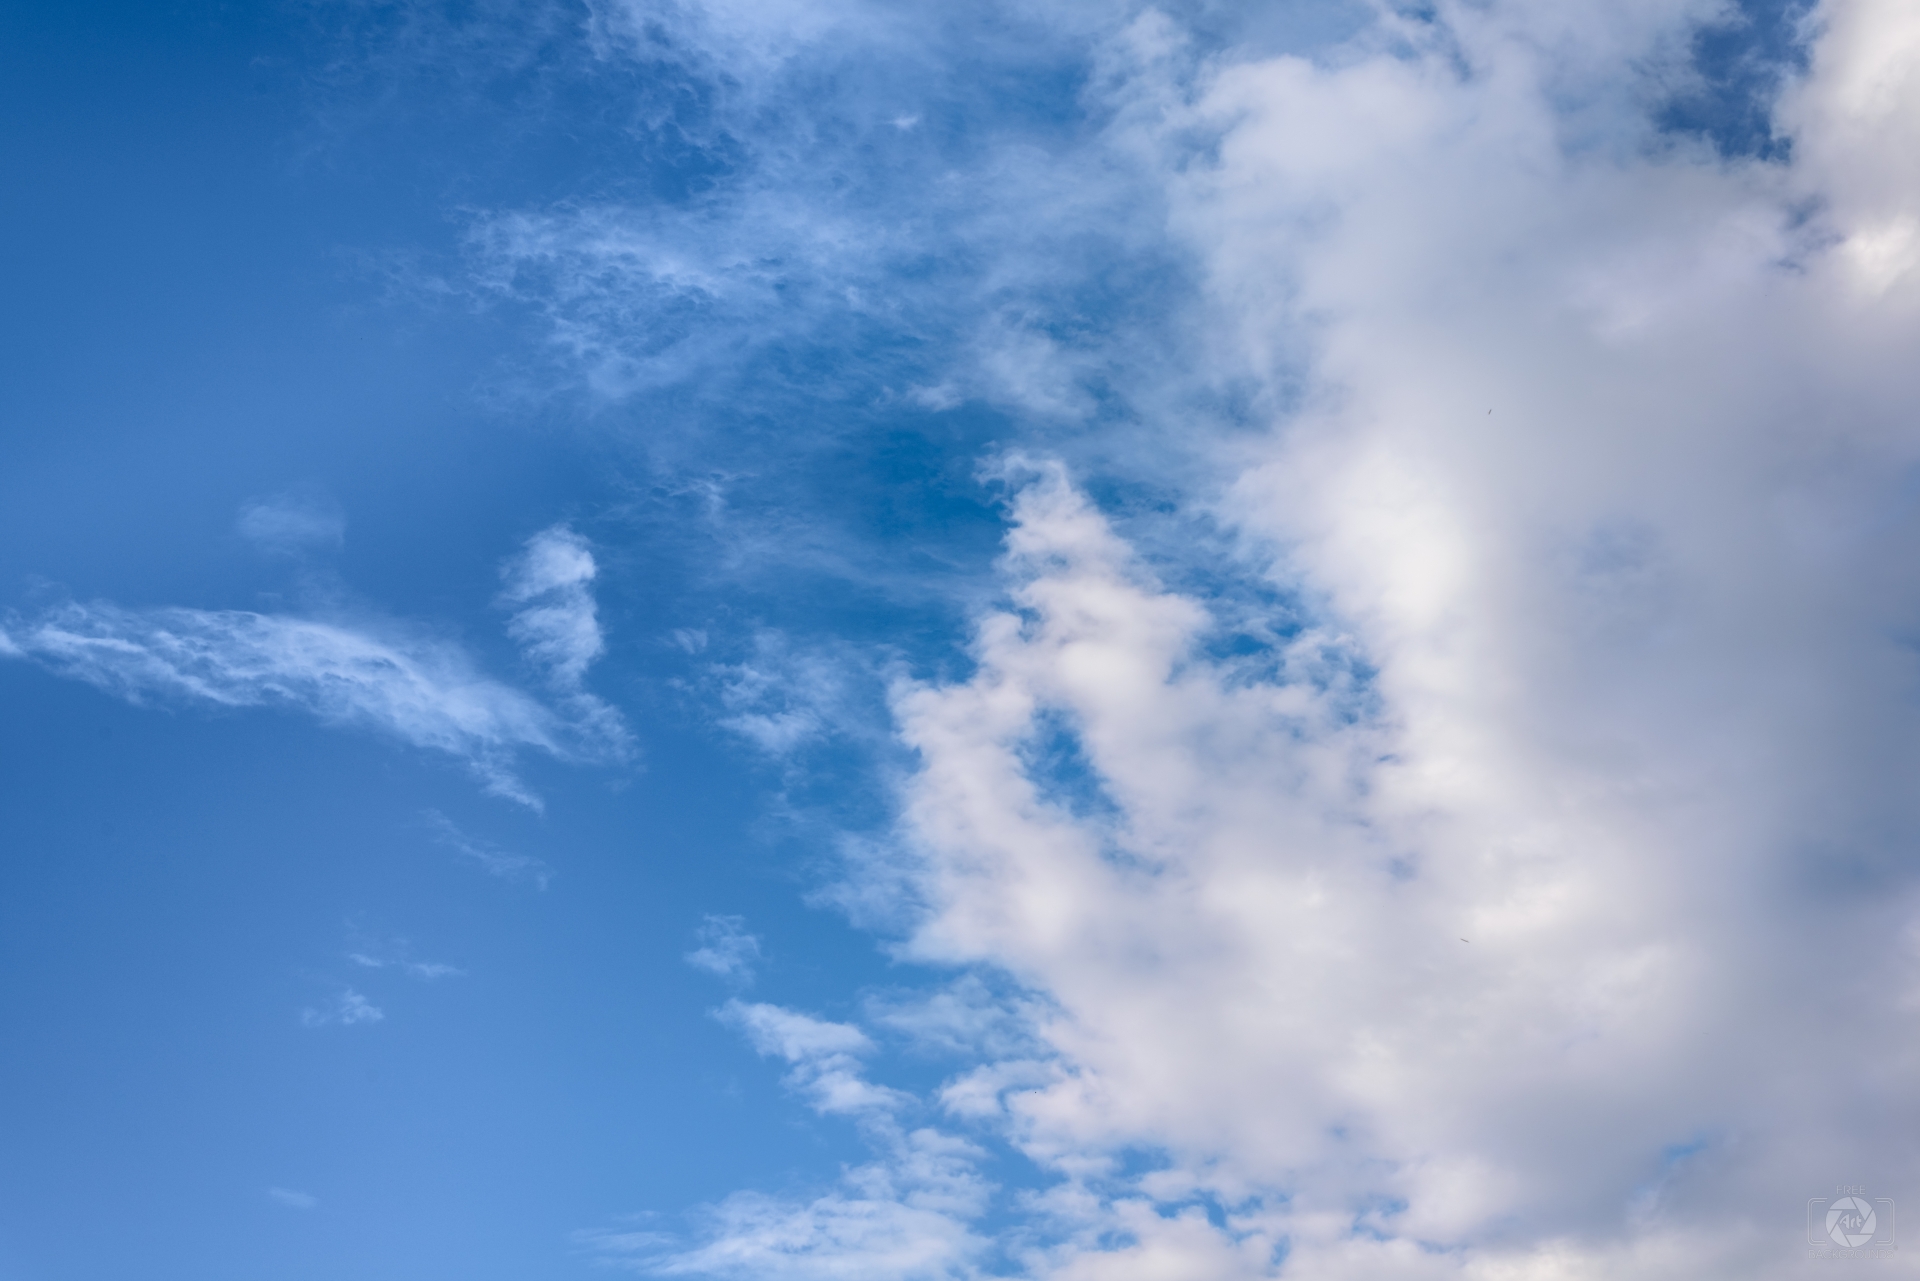 Nền mây đồng thời là một chủ đề thú vị cho người đam mê việc chụp ảnh. Với những bức hình được chụp từ góc nhìn tuyệt đẹp, bạn sẽ nhìn thấy cả sự đồng nhất và sự đa dạng trong vòng quay của mây trên bầu trời xanh.